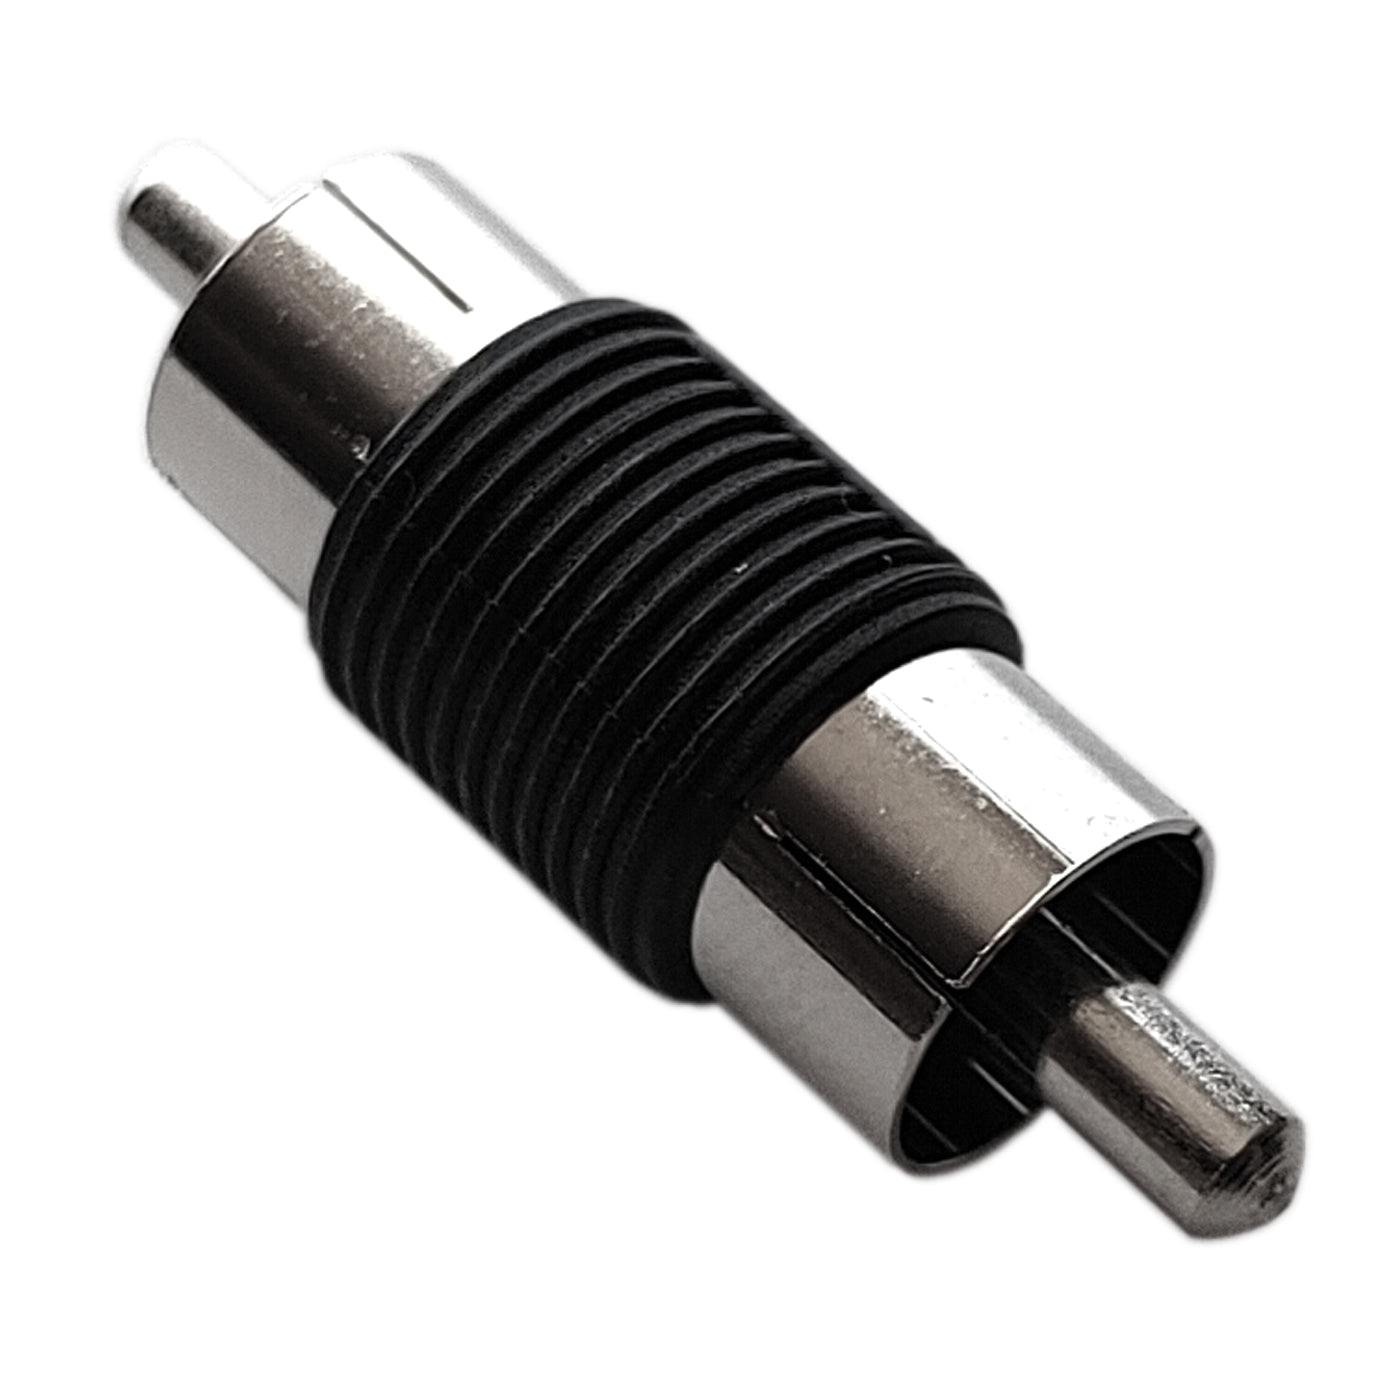 8x Cinch Verbinder Stecker/Stecker Adapter Verbindung Kupplung Verbindungsstück